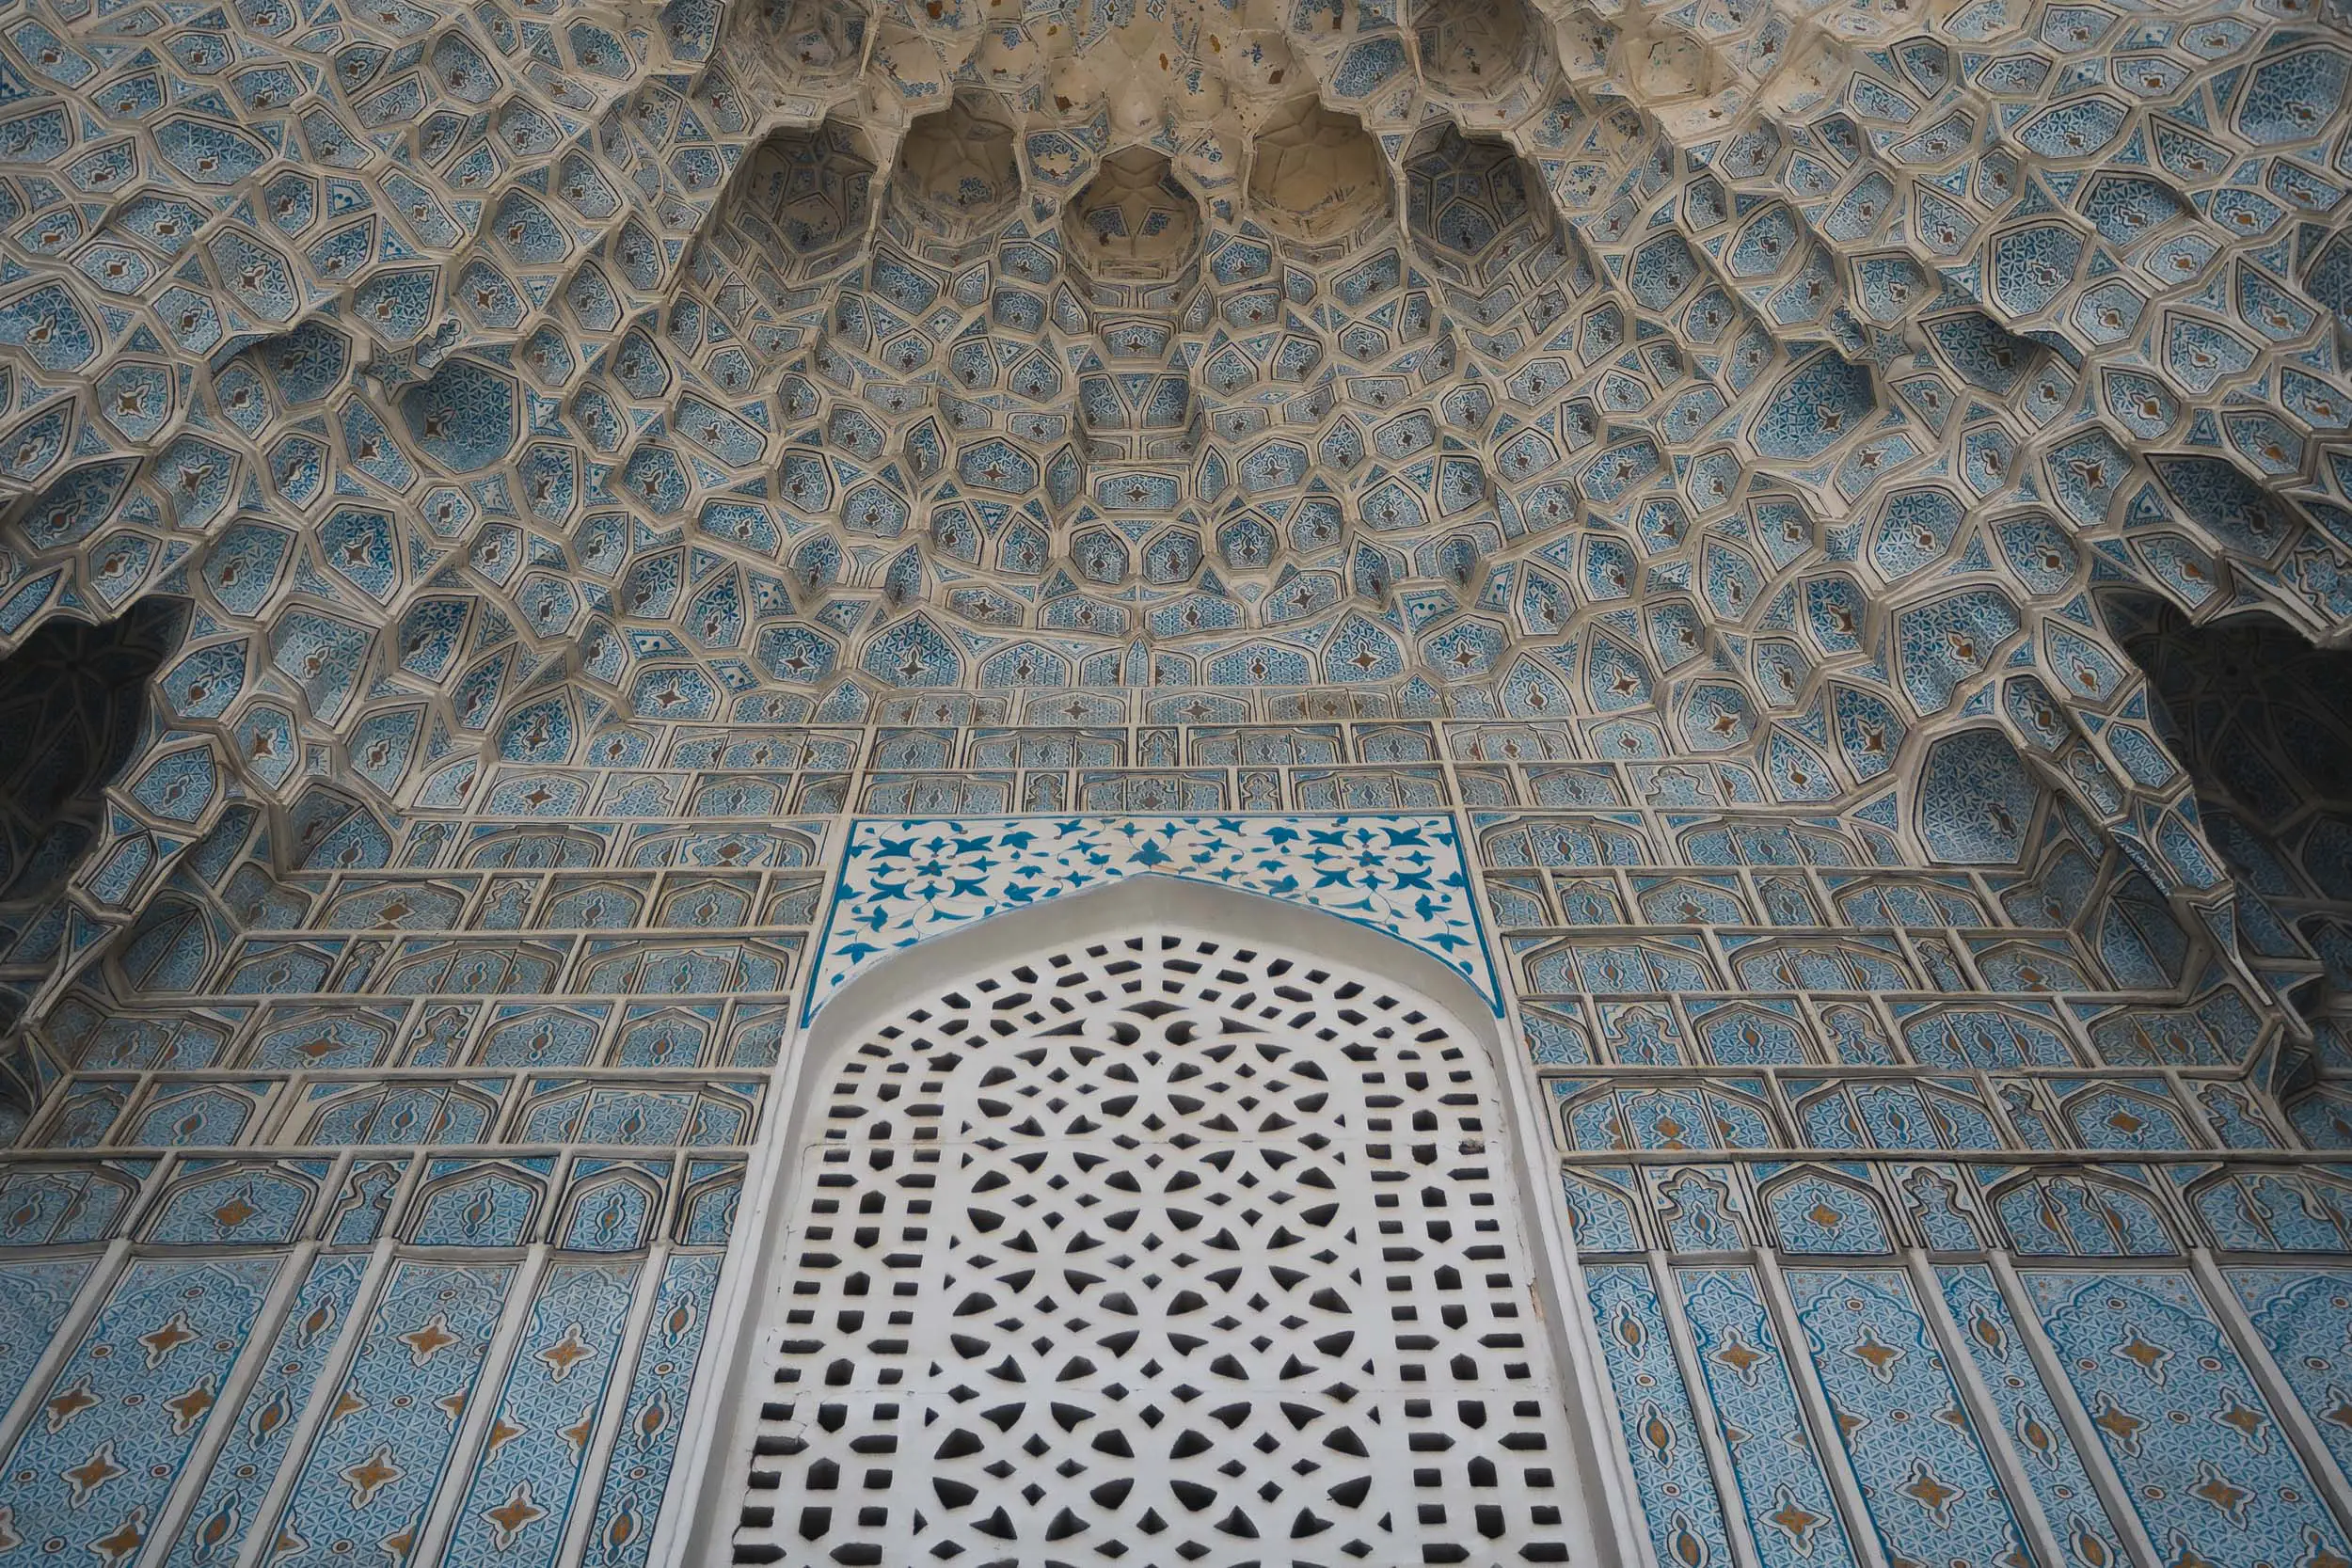 Patterns of Samarkand